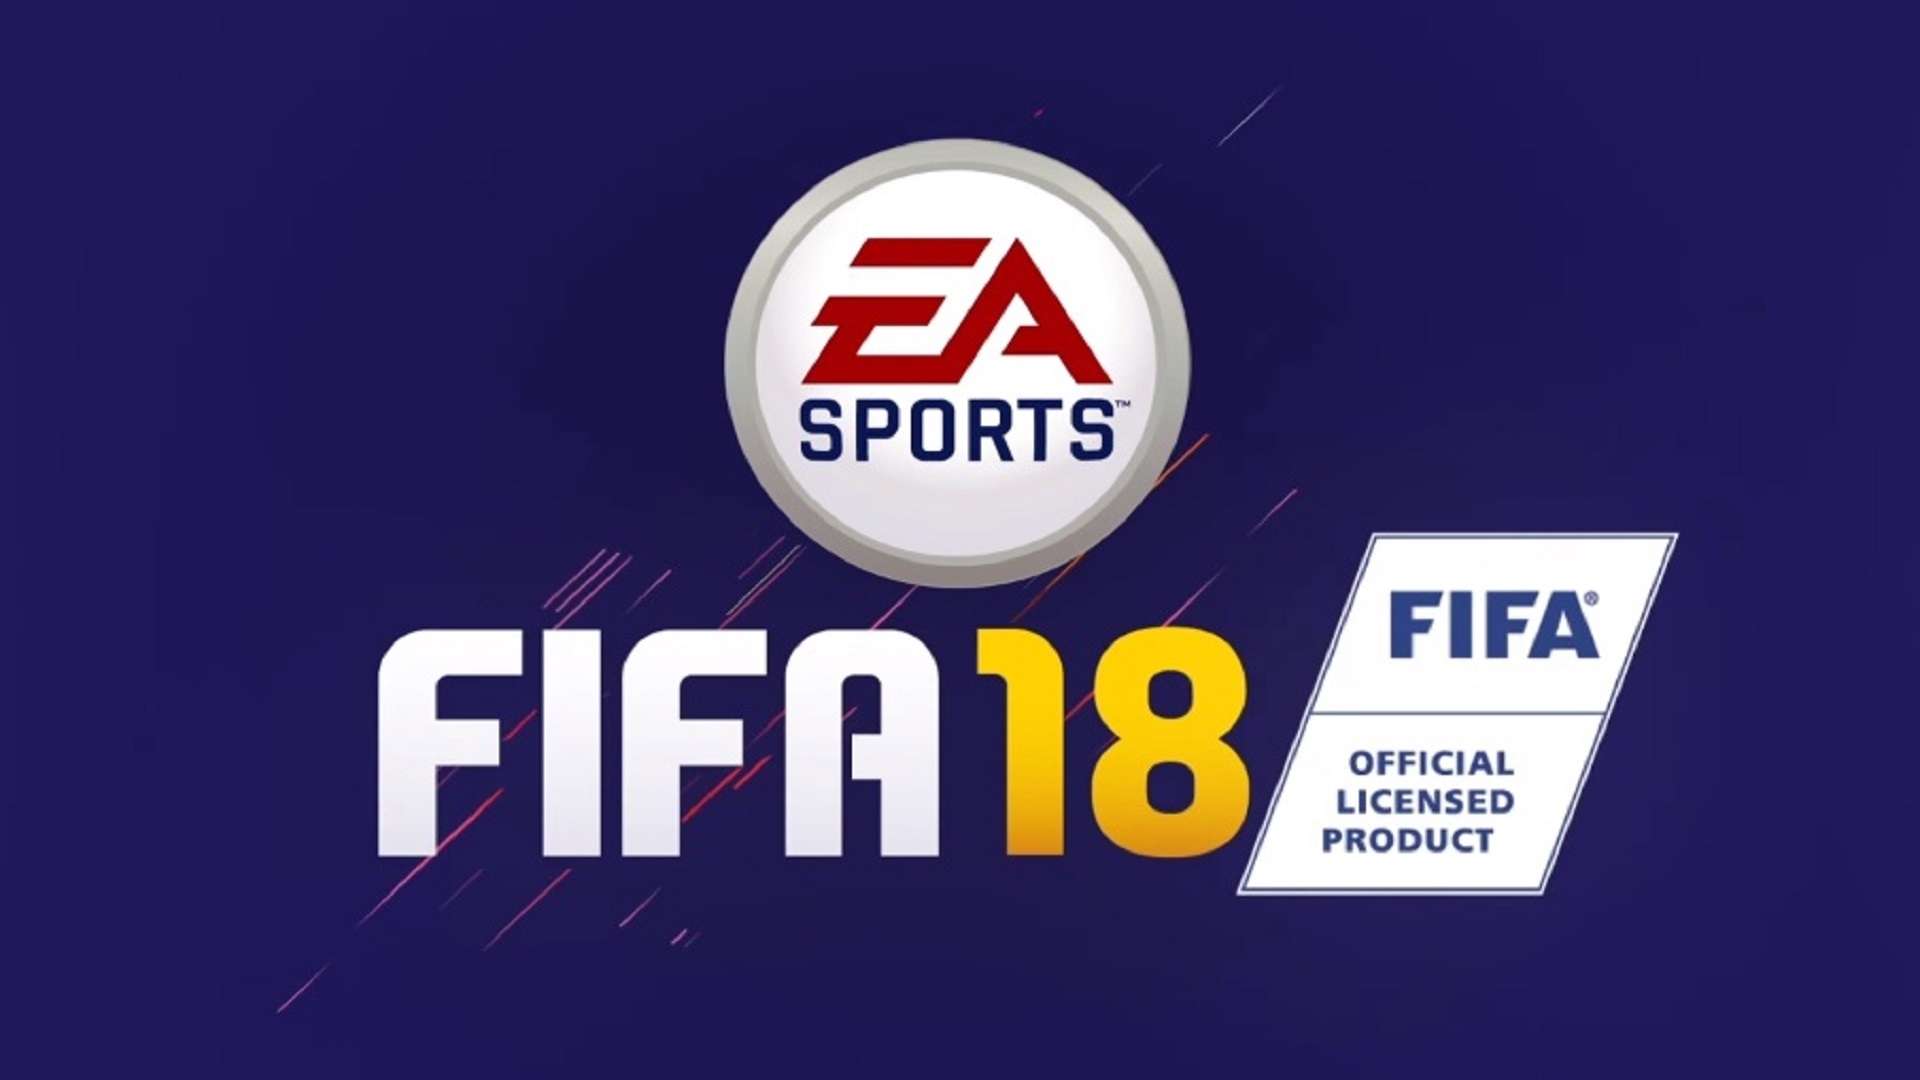 FIFA 18 logo